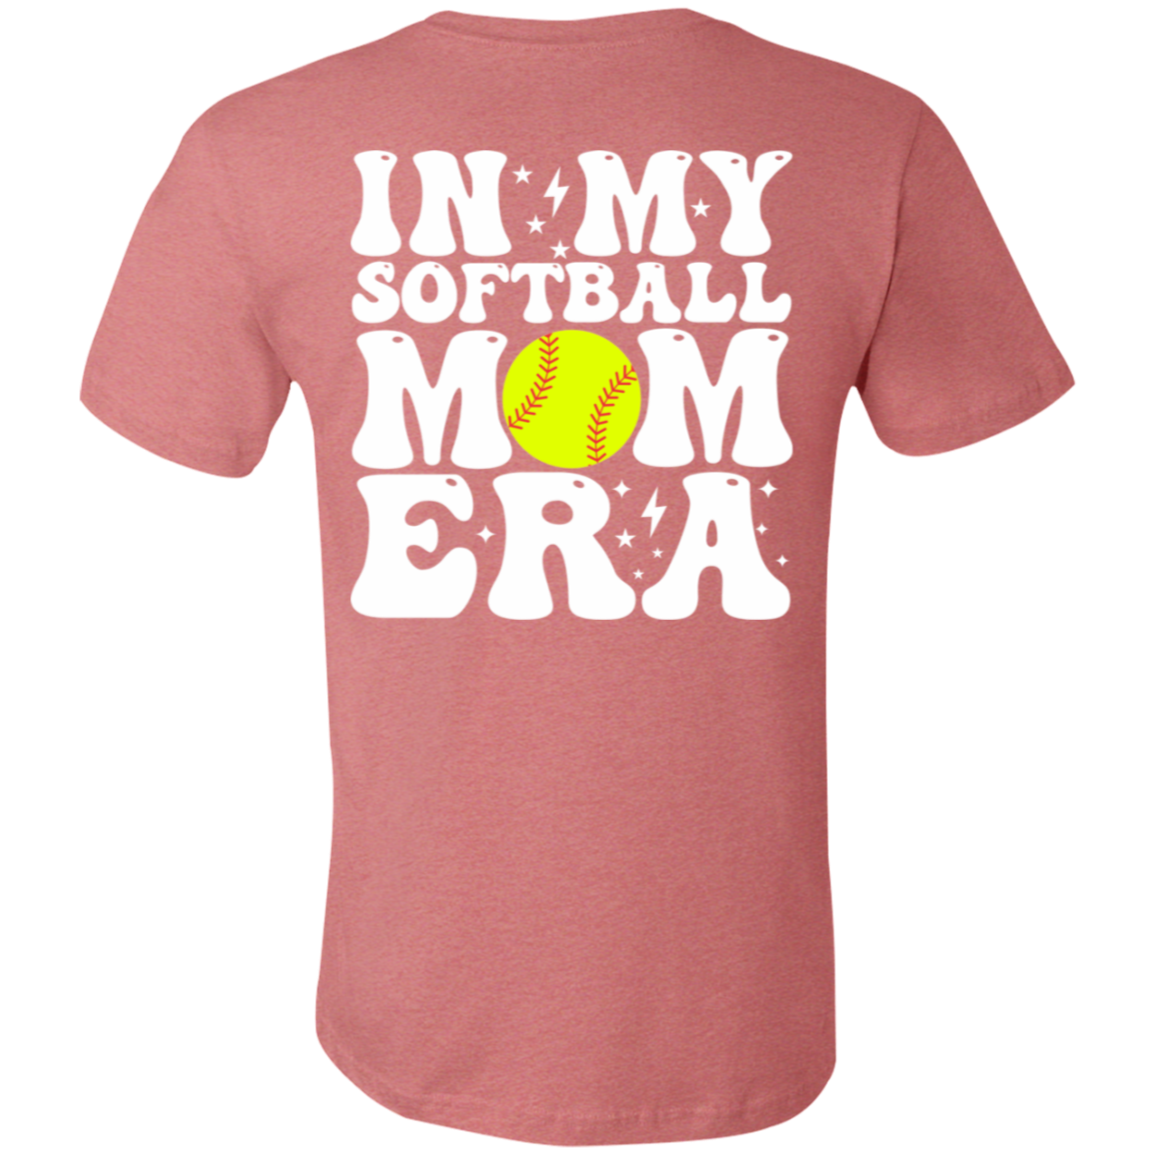 In my softball mom era Premium Women's Tee